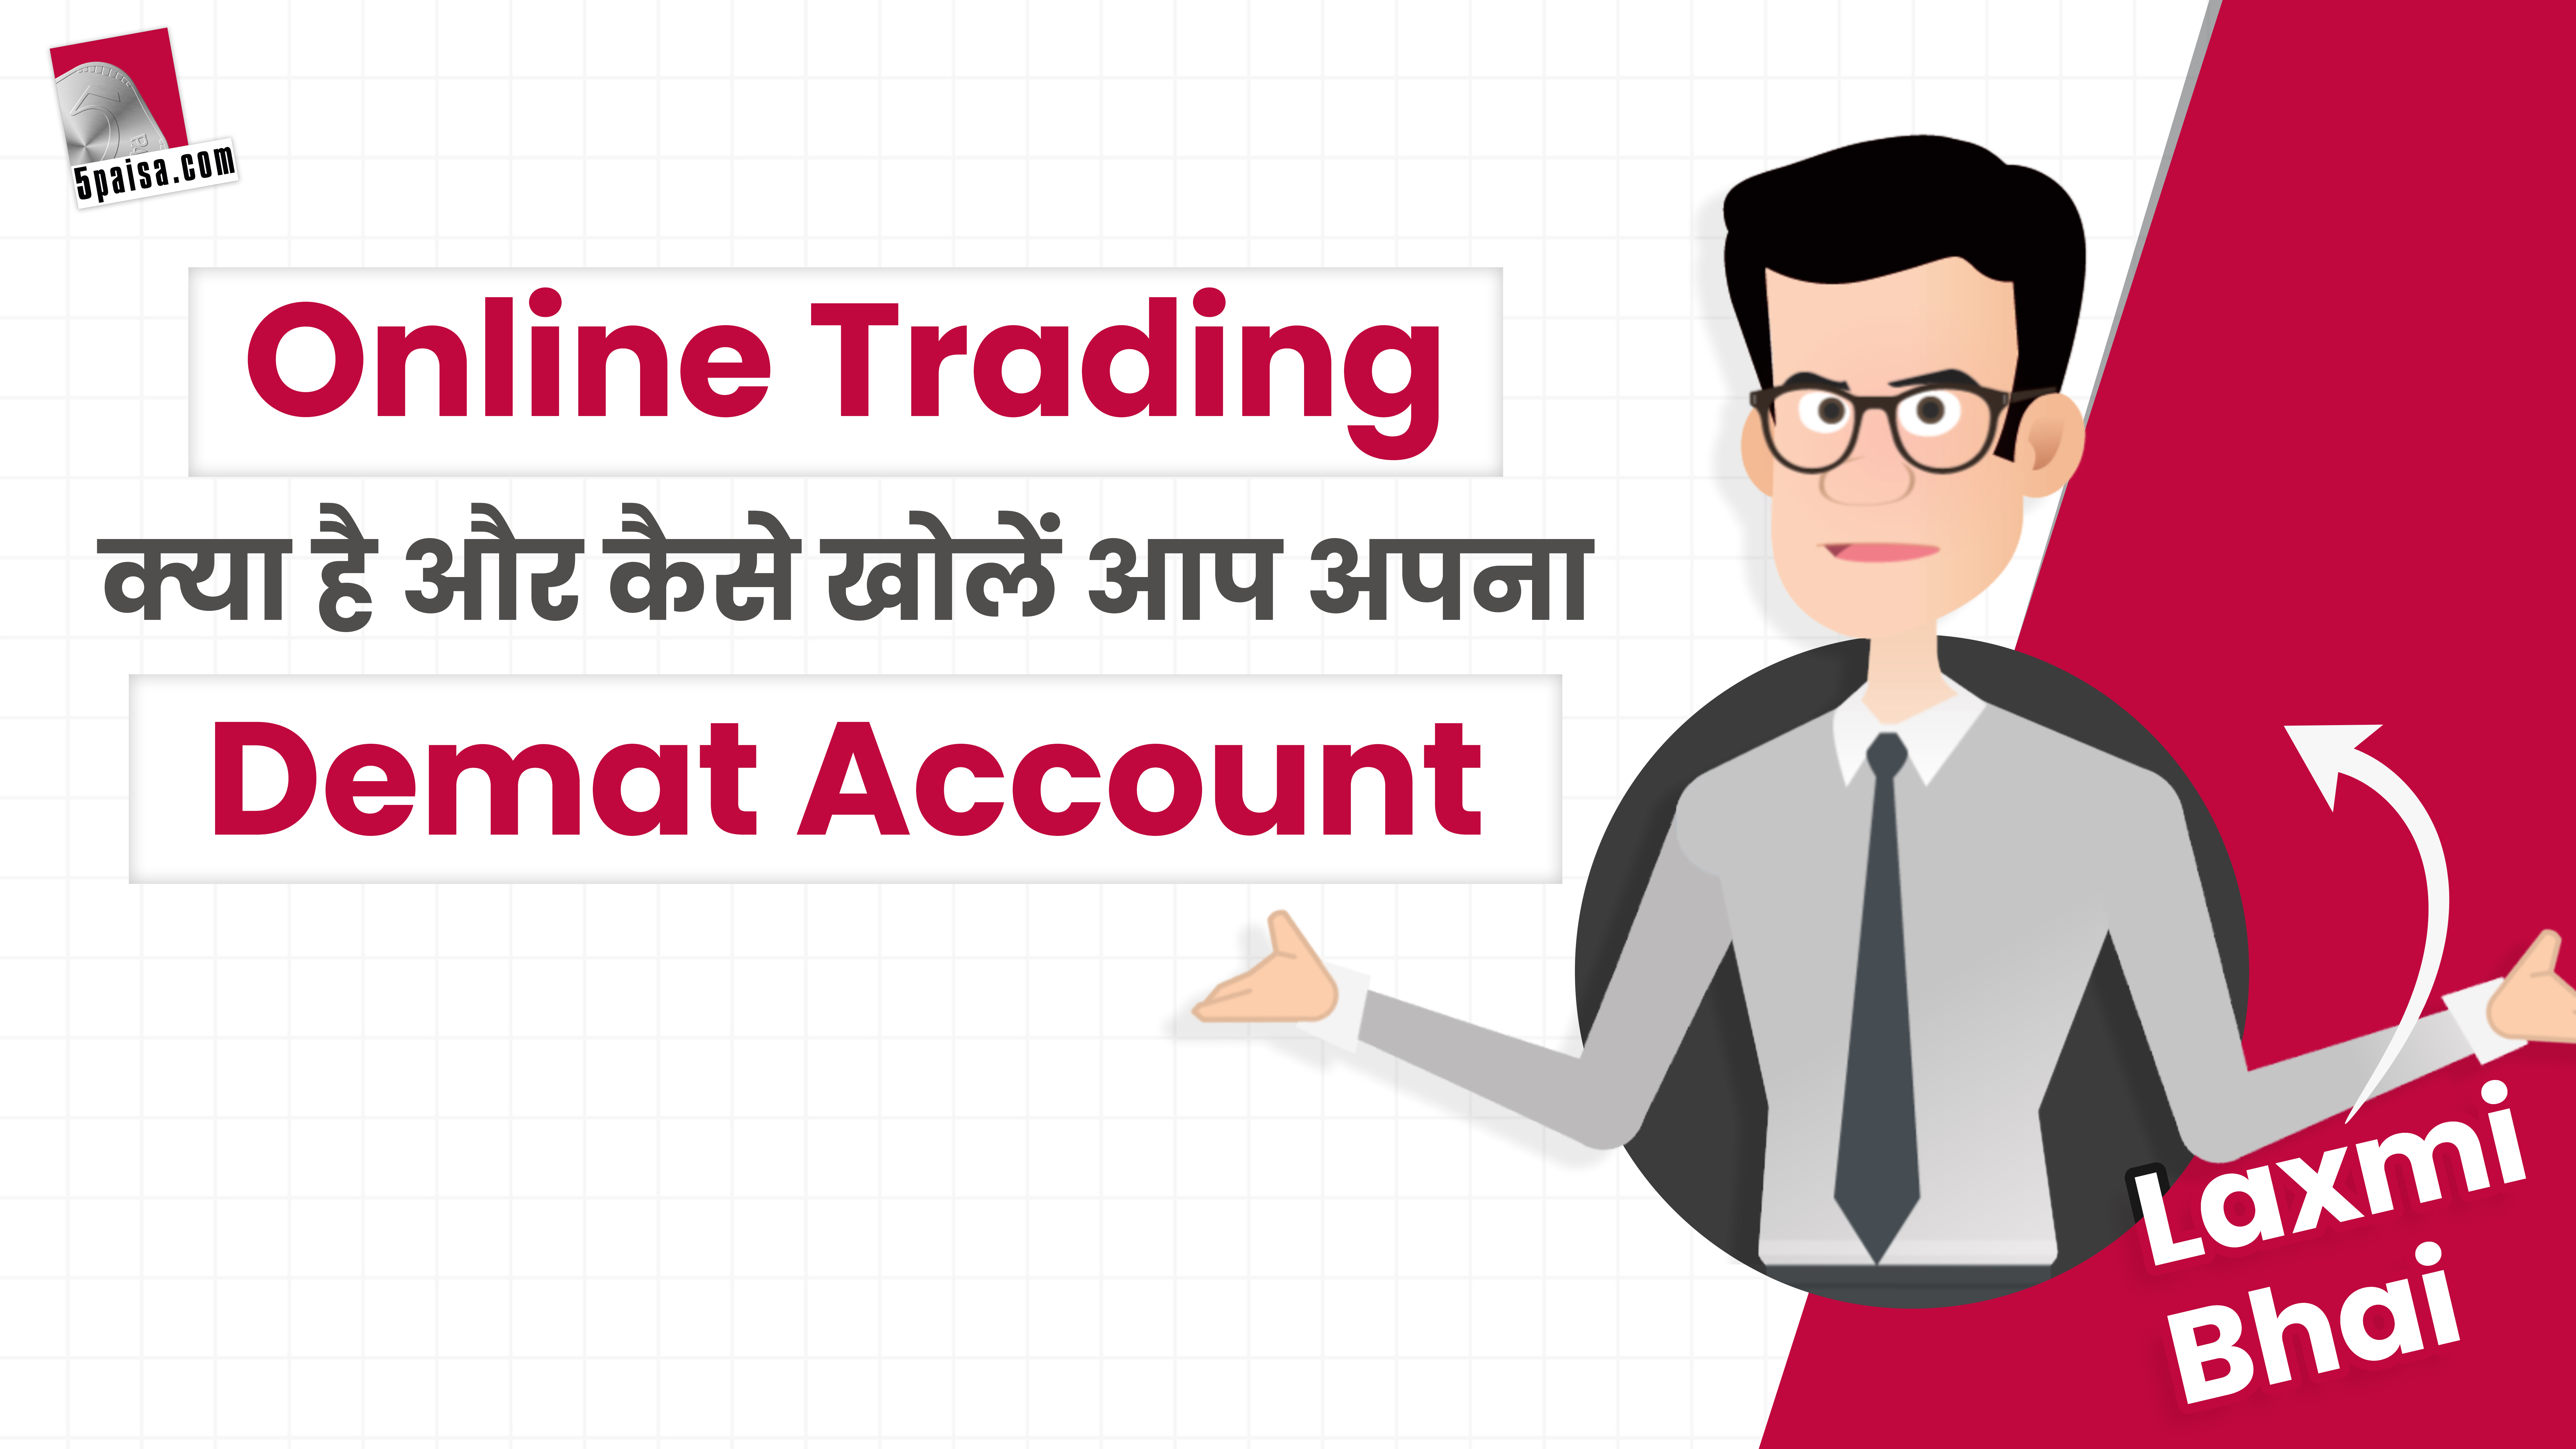 Laxmi Bhai से जानिये, Online trading क्या है, और कैसे खोले आप Demat Account